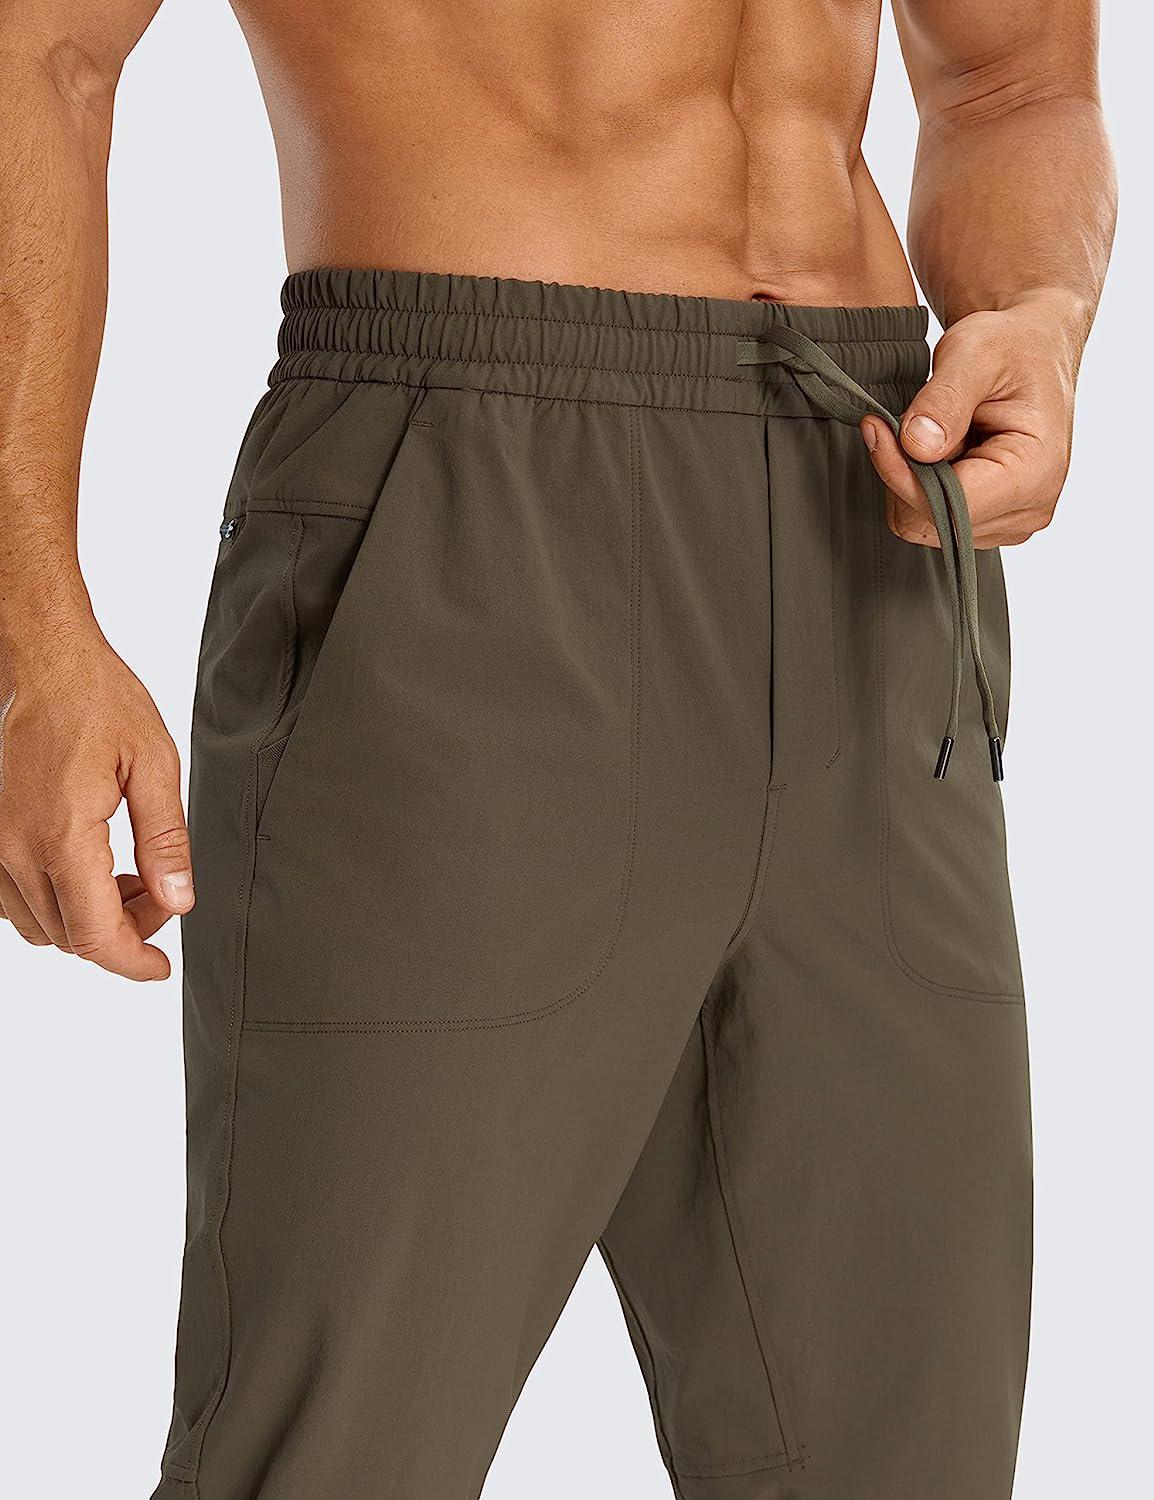 CRZ YOGA Men's Golf Joggers Pants, 30 Quick Dry Workout Pants, Large  (NS018) 